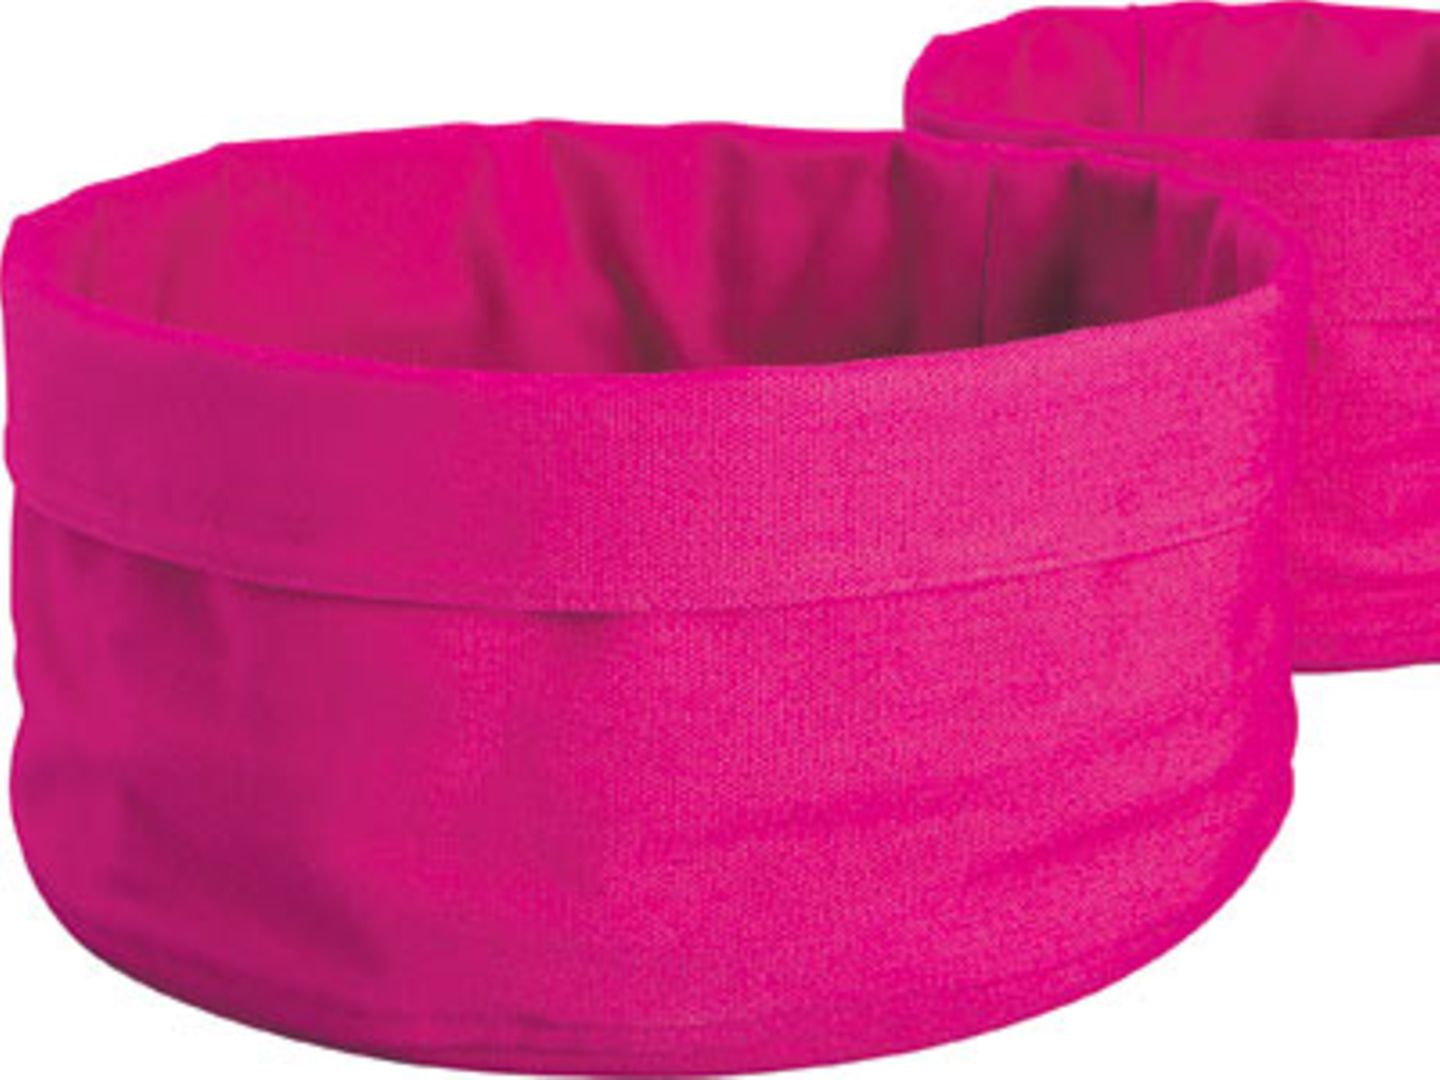 H&M Home    Bloß keine Unordnung: Pinkfarbene Körbe für Make-up, Haarklammern und Co. aus der Herbstkollektion 2009 von H&M Home. 2er-Set aus 100% Baumwolle, um 10 Euro. Erhältlich ab August. Über www.hm.com